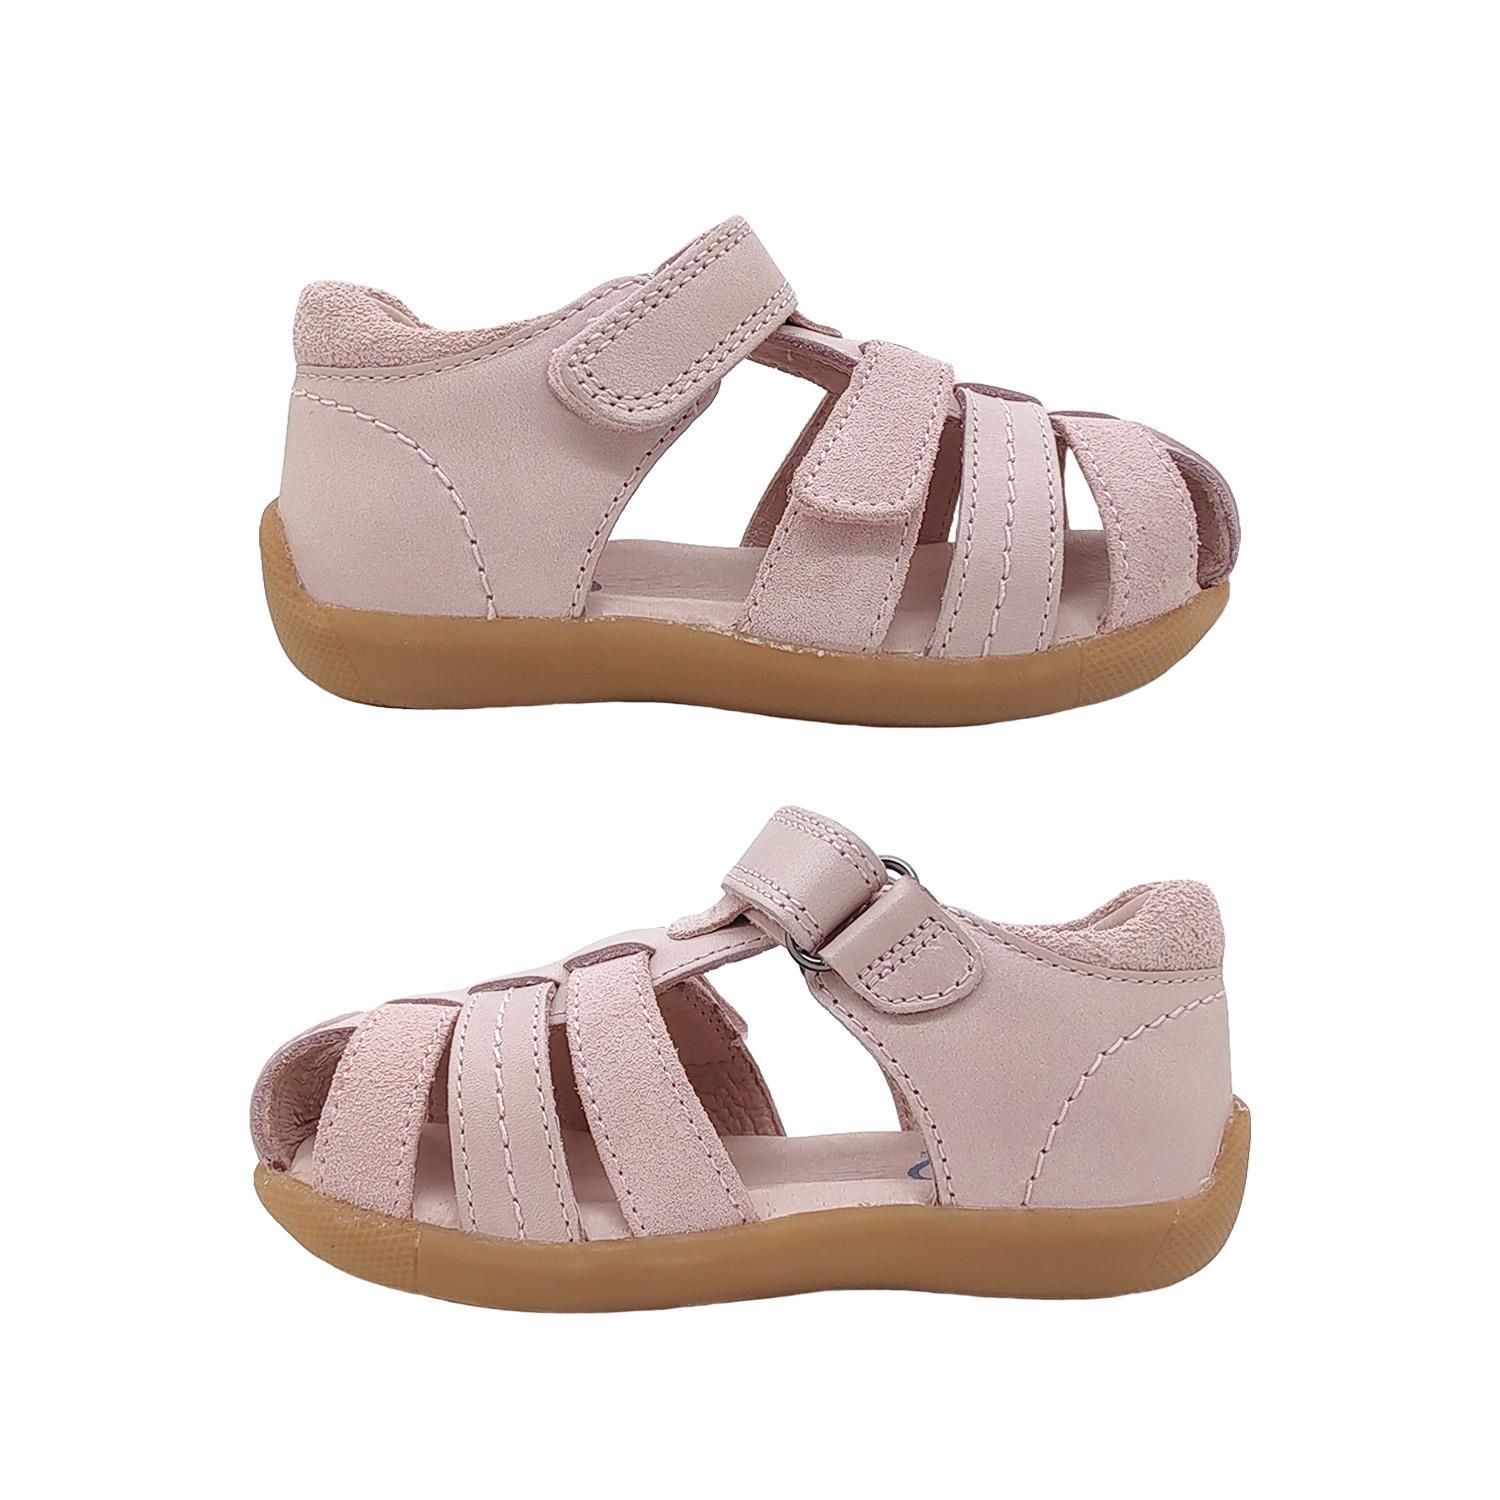 Surefit Alex Little Girls Sandals Leather Upper Toddler Back in Toe Cover Adjust-Pink-22